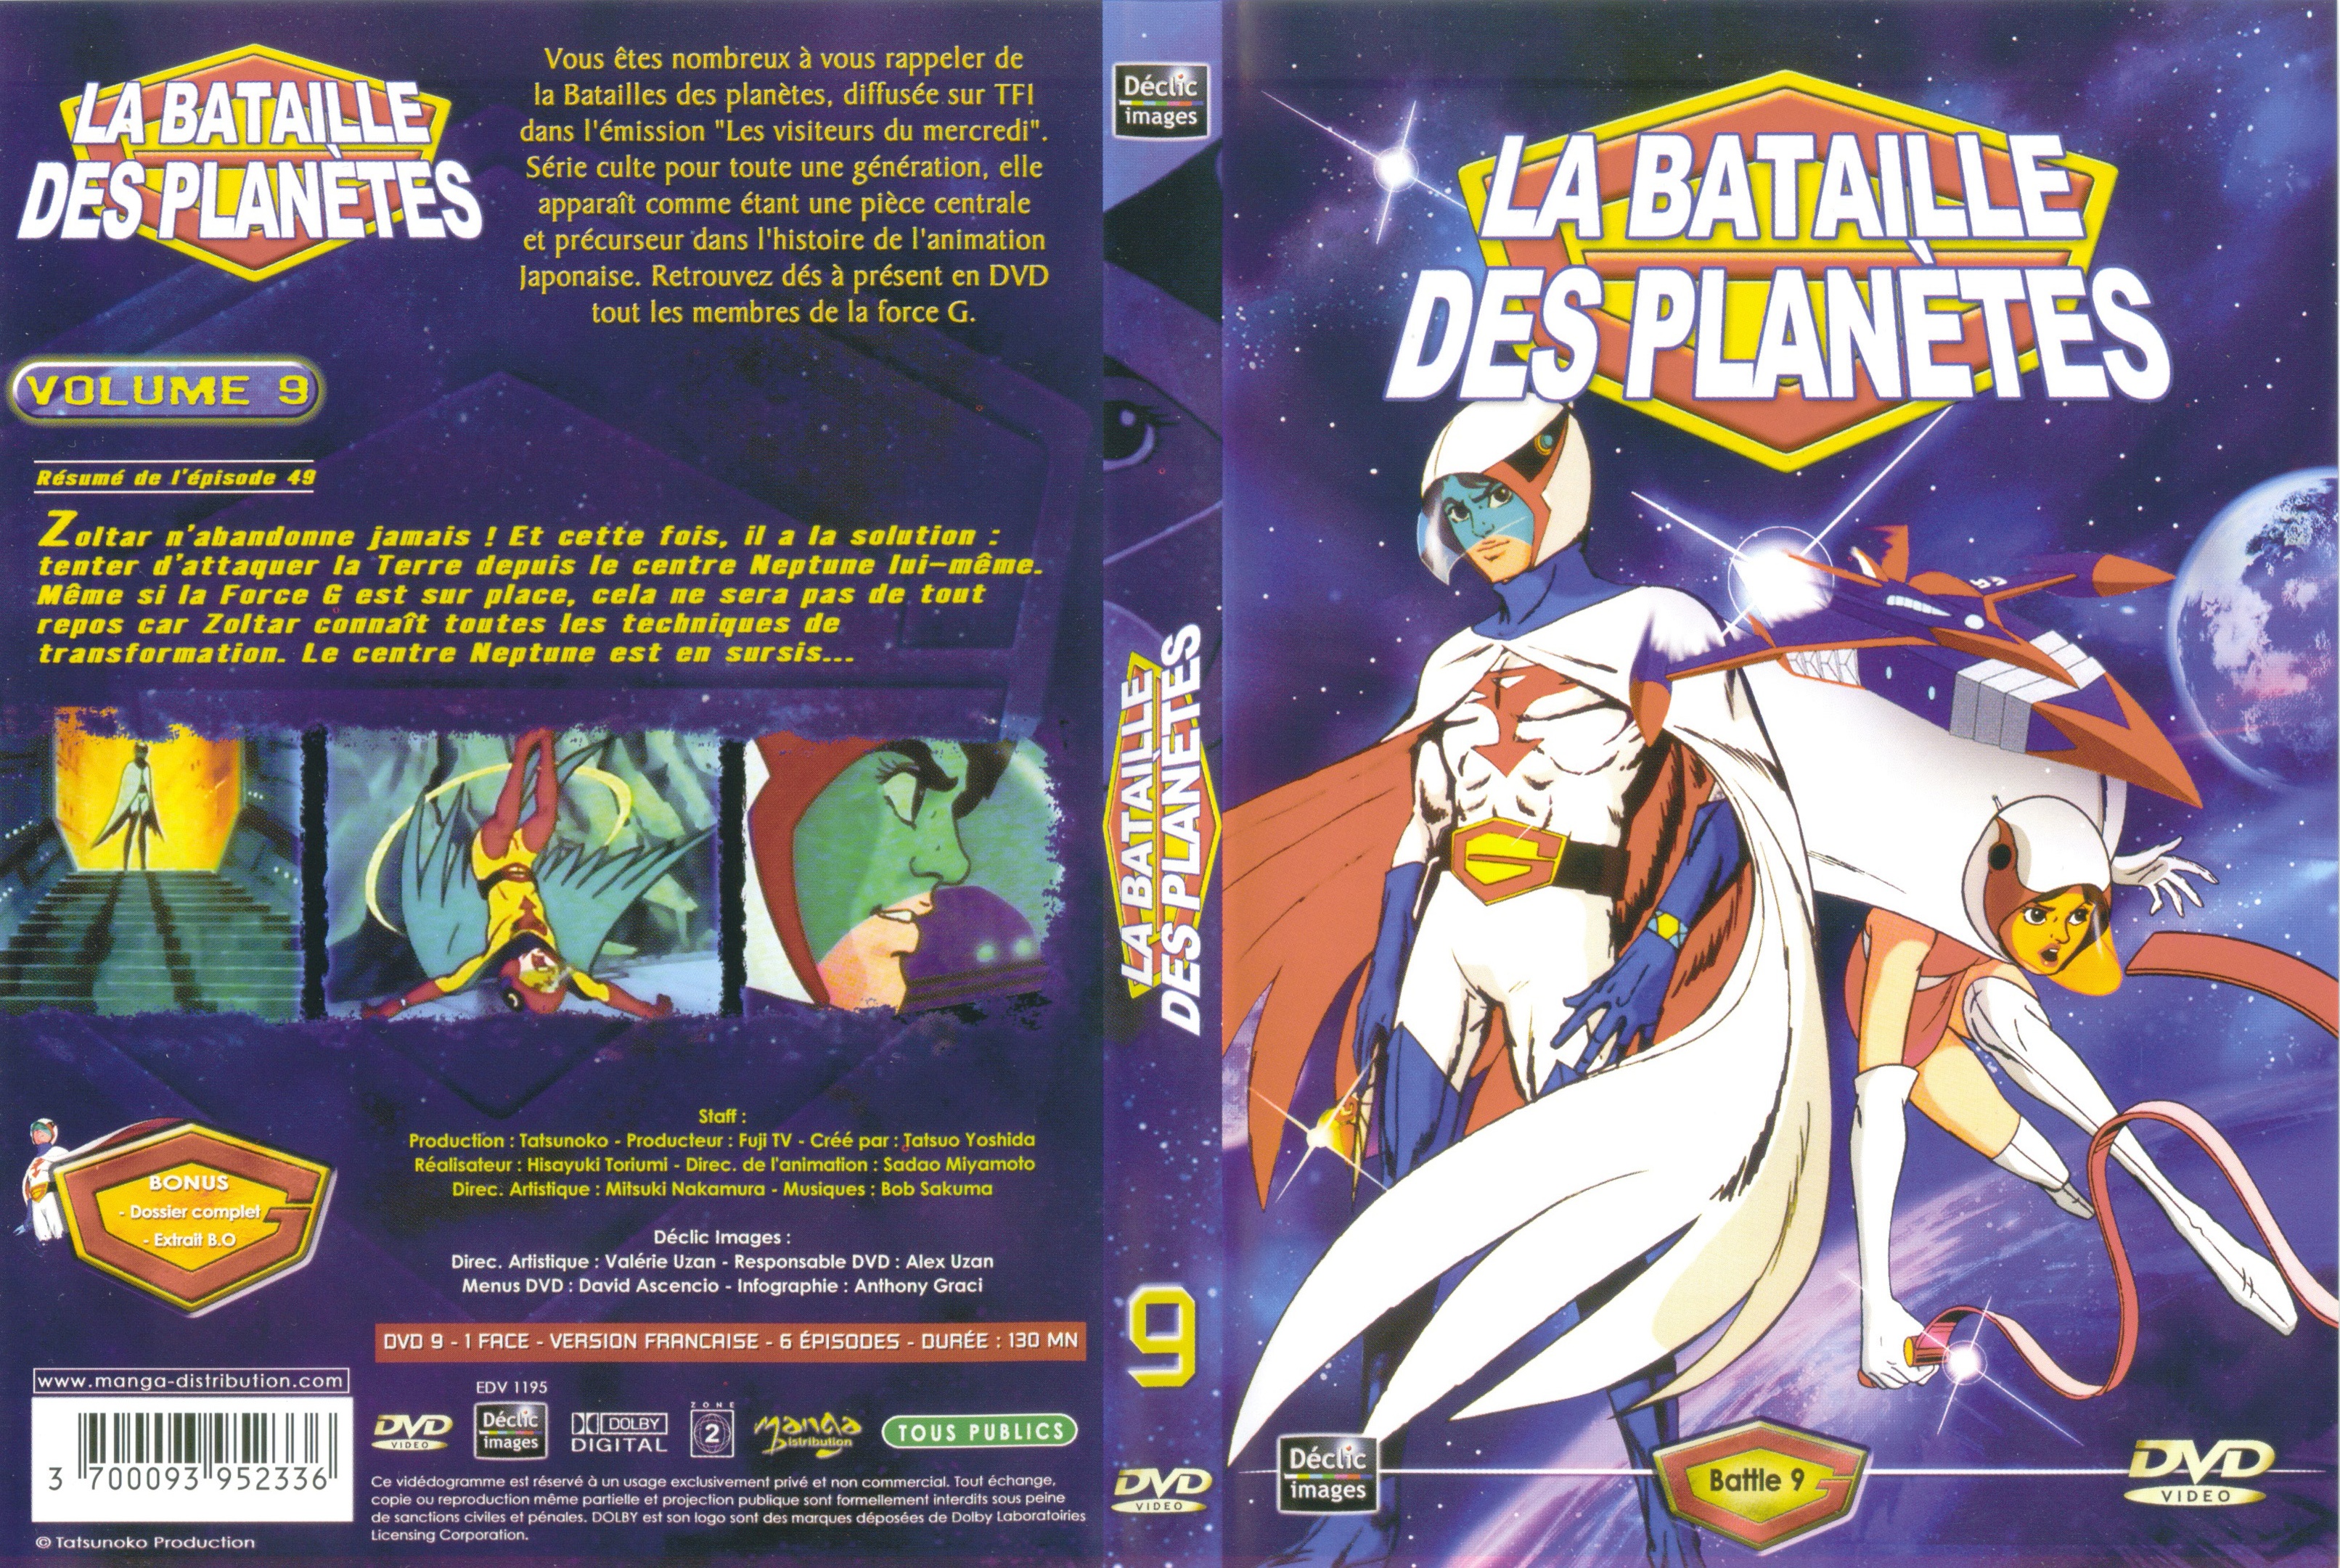 Jaquette DVD La bataille des planetes DVD 09